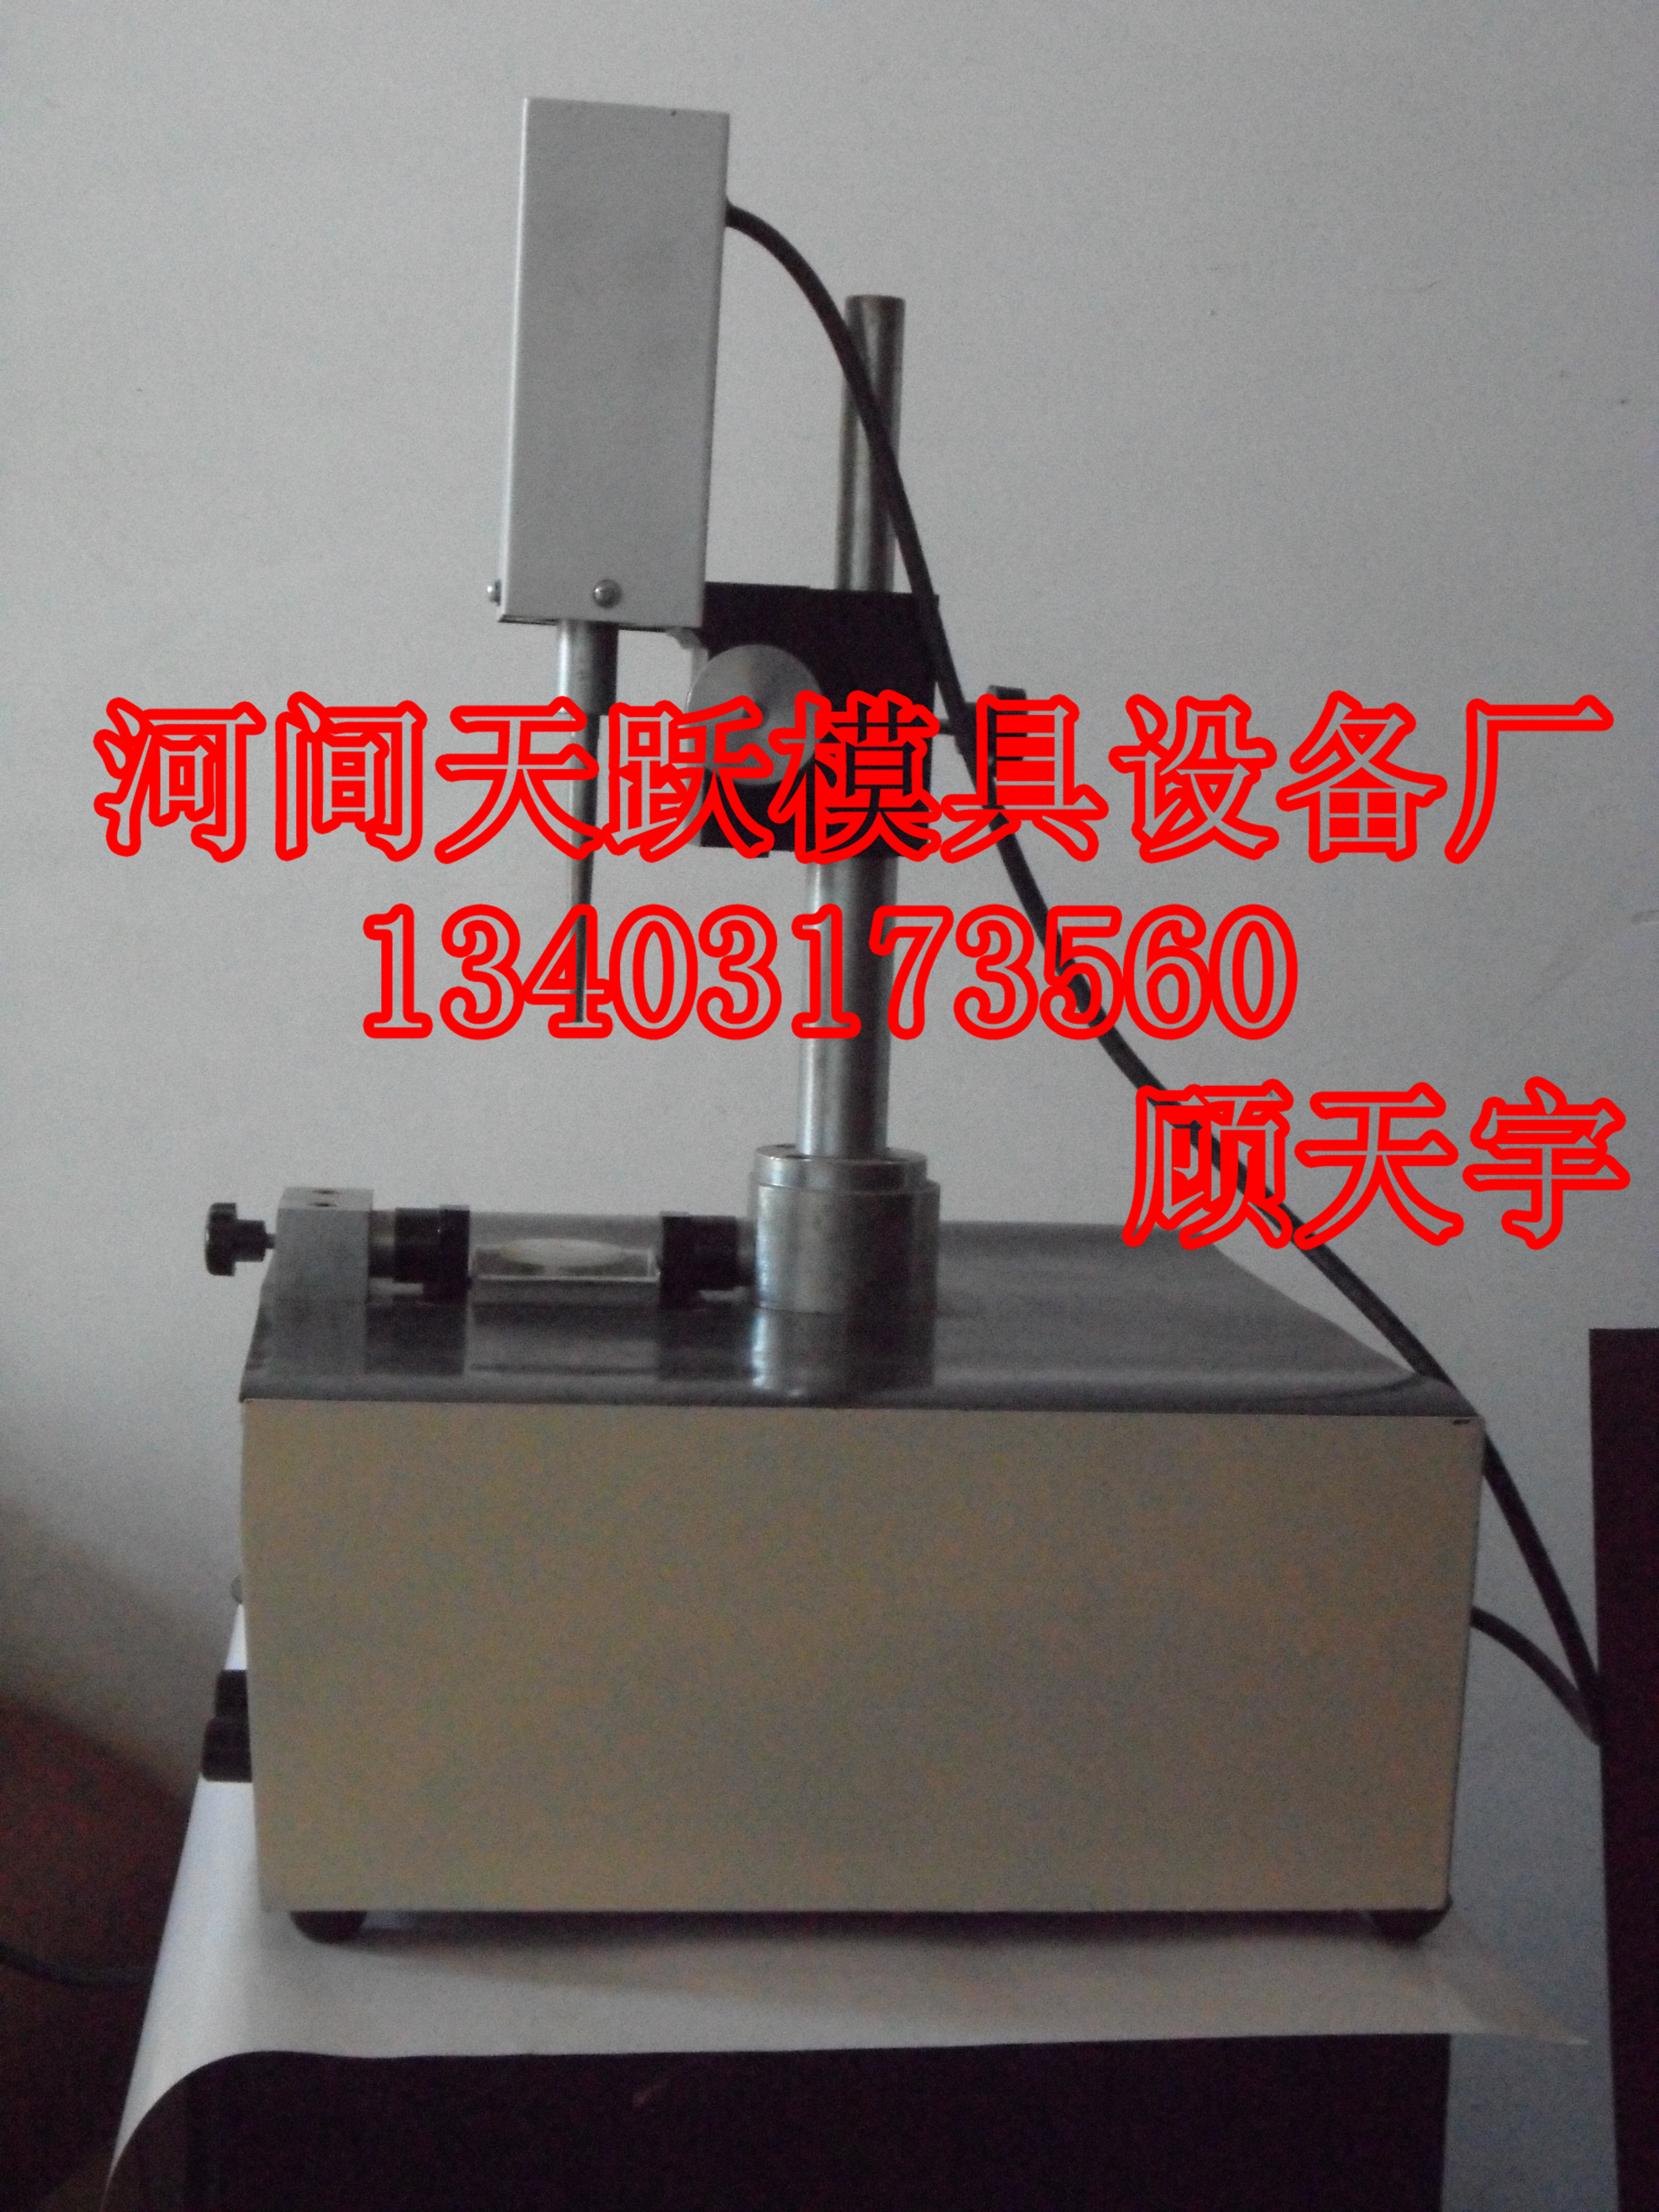 沧州市TY-200型超声波研磨机厂家供应TY-200型超声波研磨机 TY-200型超声波研磨机